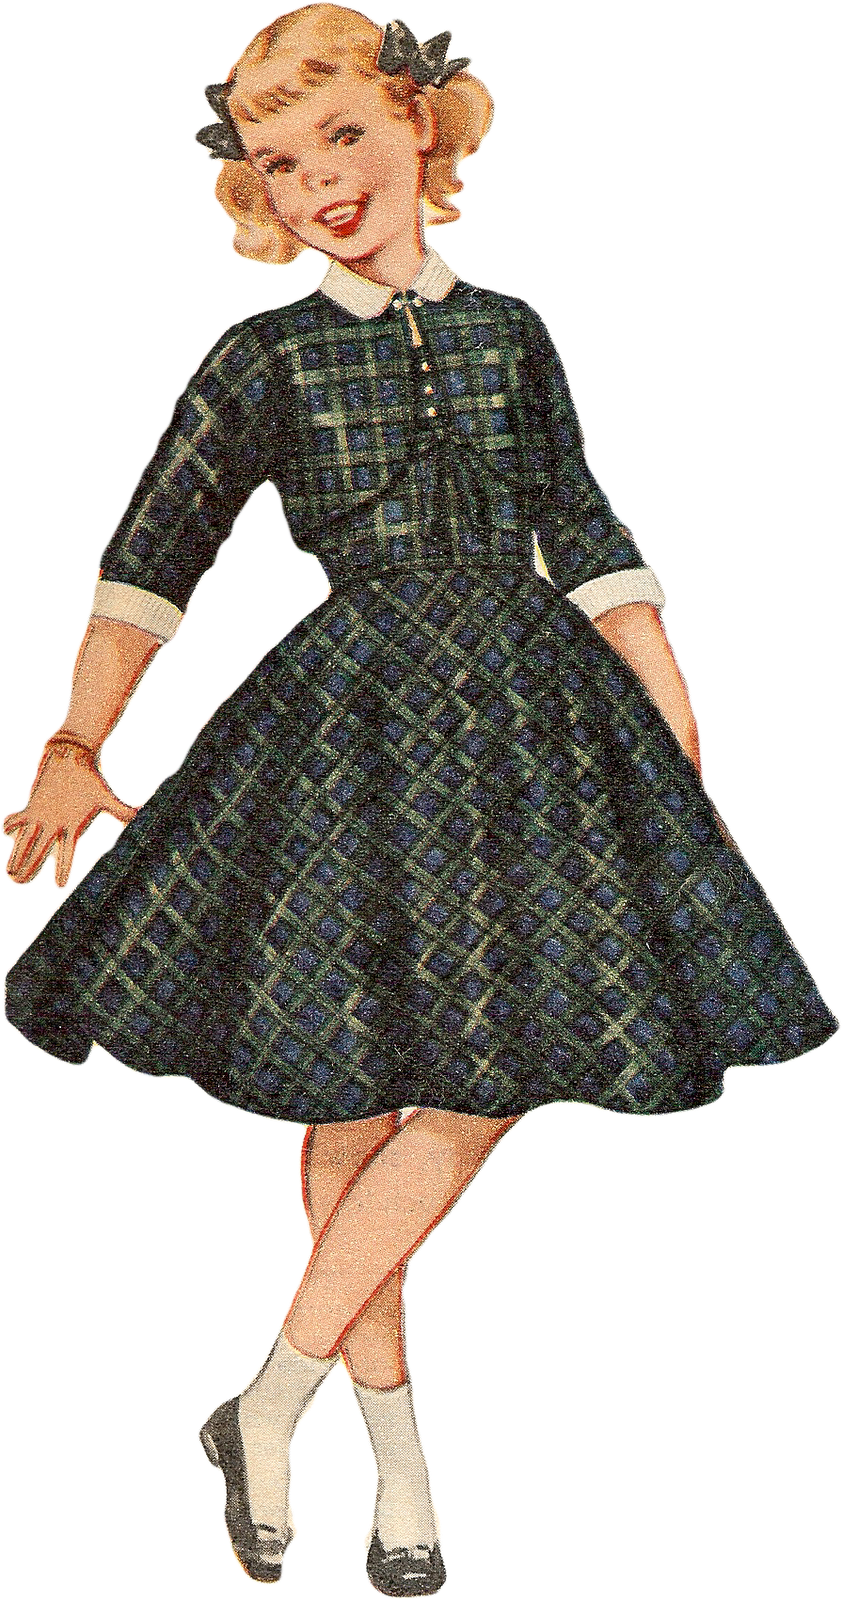 Free Vintage Image 1955 Girl 842×1,600 Pixels Vintage - Vintage Girl Png Clipart (842x1600), Png Download